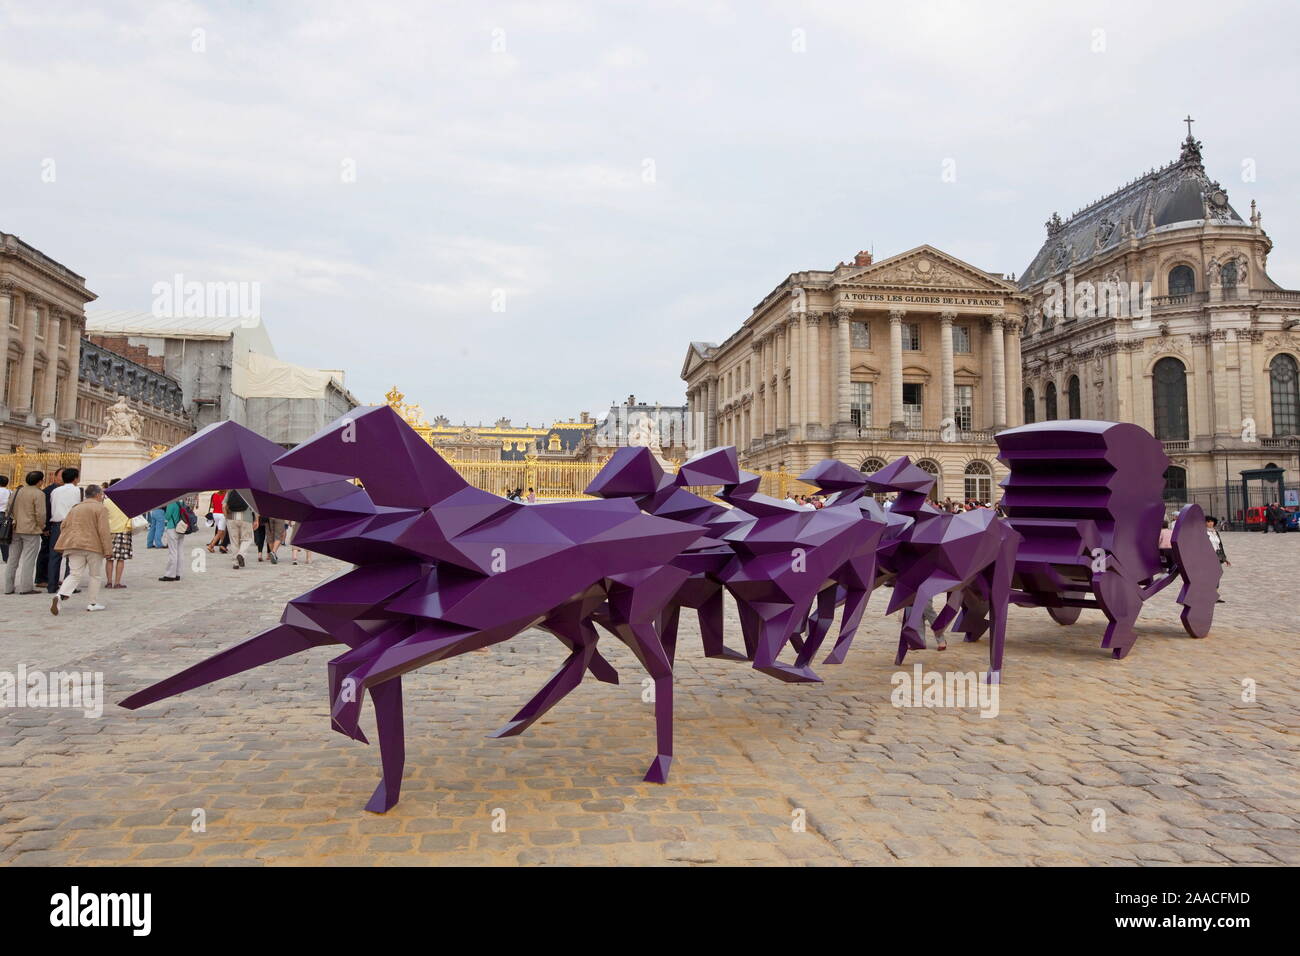 El artista plástico Xavier Veilhan SUCCESSFULLLY superaron el reto de fusionar con la arquitectura de Versalles, en un diálogo elocuente Foto de stock